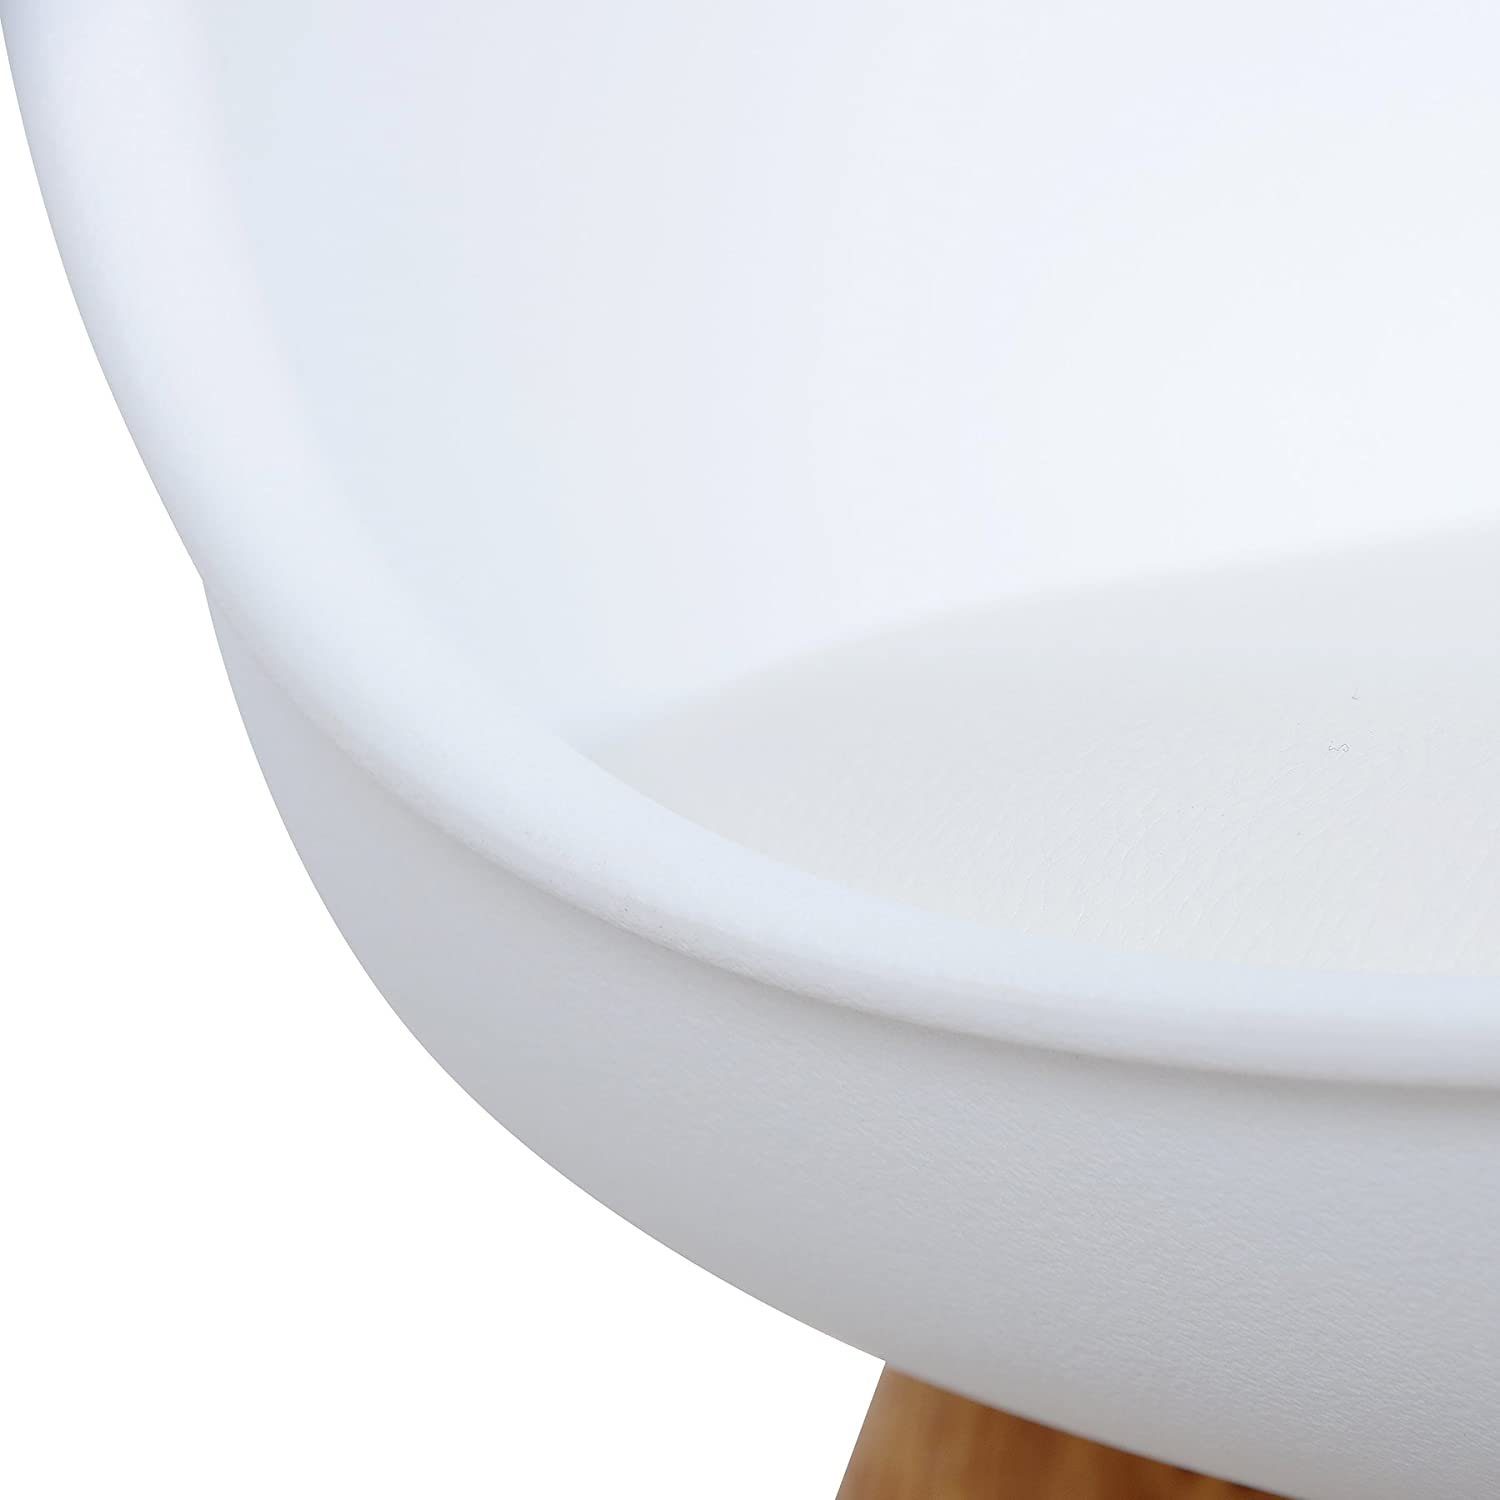 Sitzfläche aus Weiß | Kunstleder (Set, 6 St), Weiß Woltu Designstuhl Esszimmerstuhl